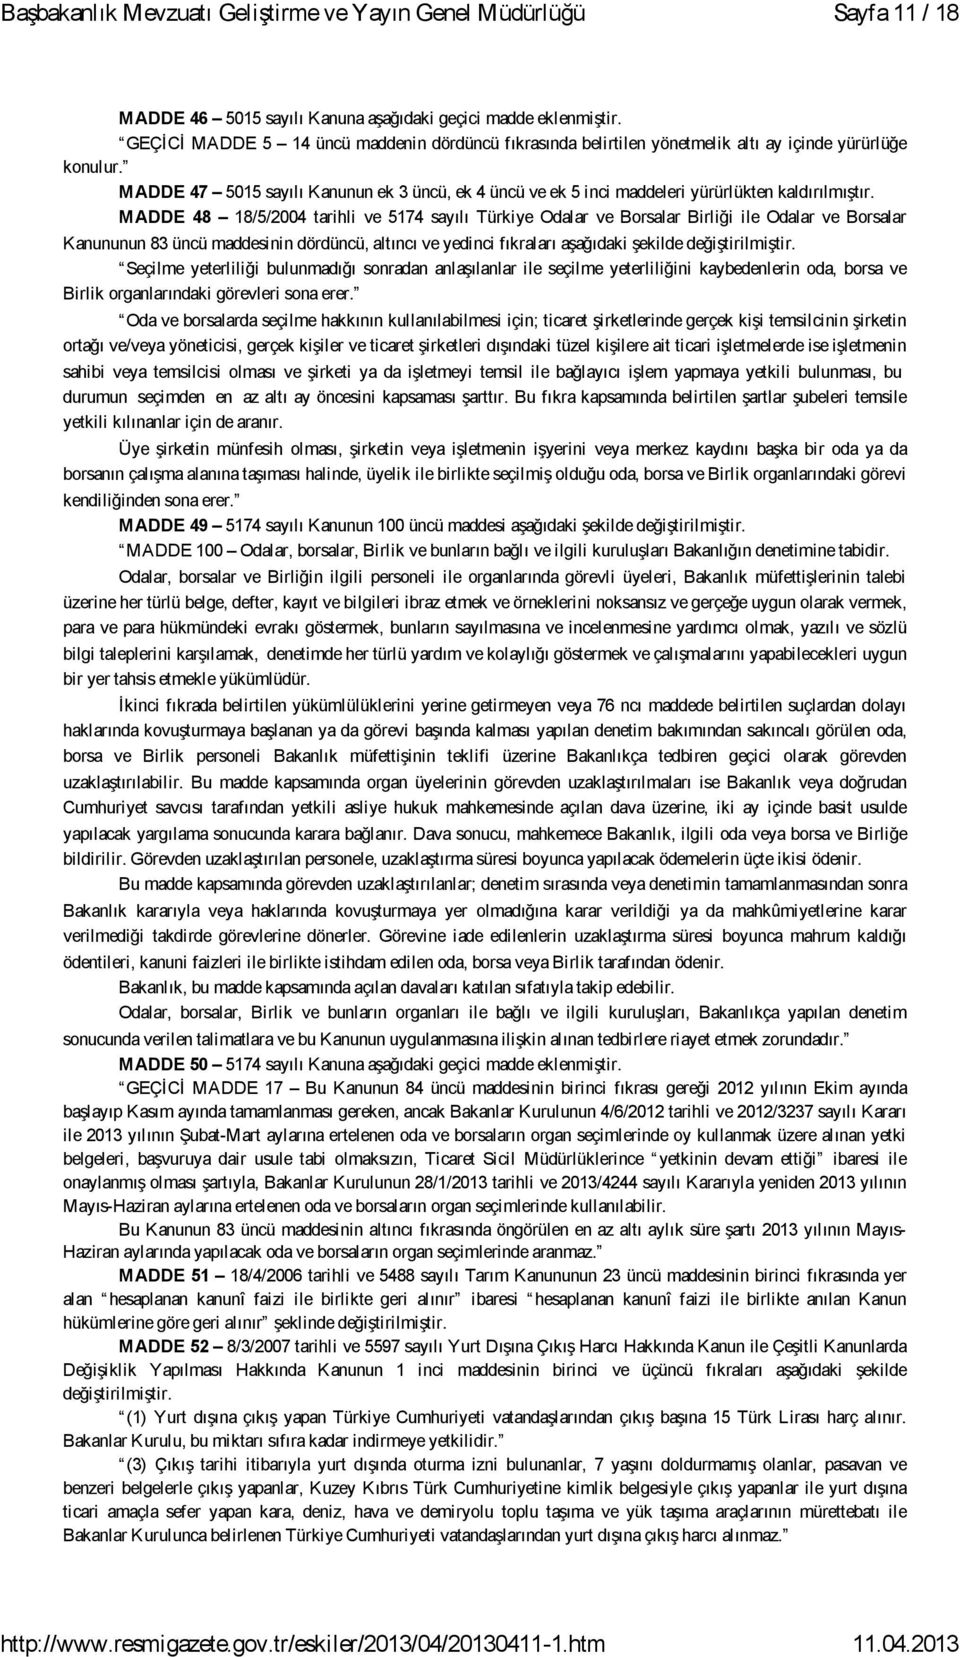 MADDE 48 18/5/2004 tarihli ve 5174 sayılı Türkiye Odalar ve Borsalar Birliği ile Odalar ve Borsalar Kanununun 83 üncü maddesinin dördüncü, altıncı ve yedinci fıkraları aşağıdaki şekilde